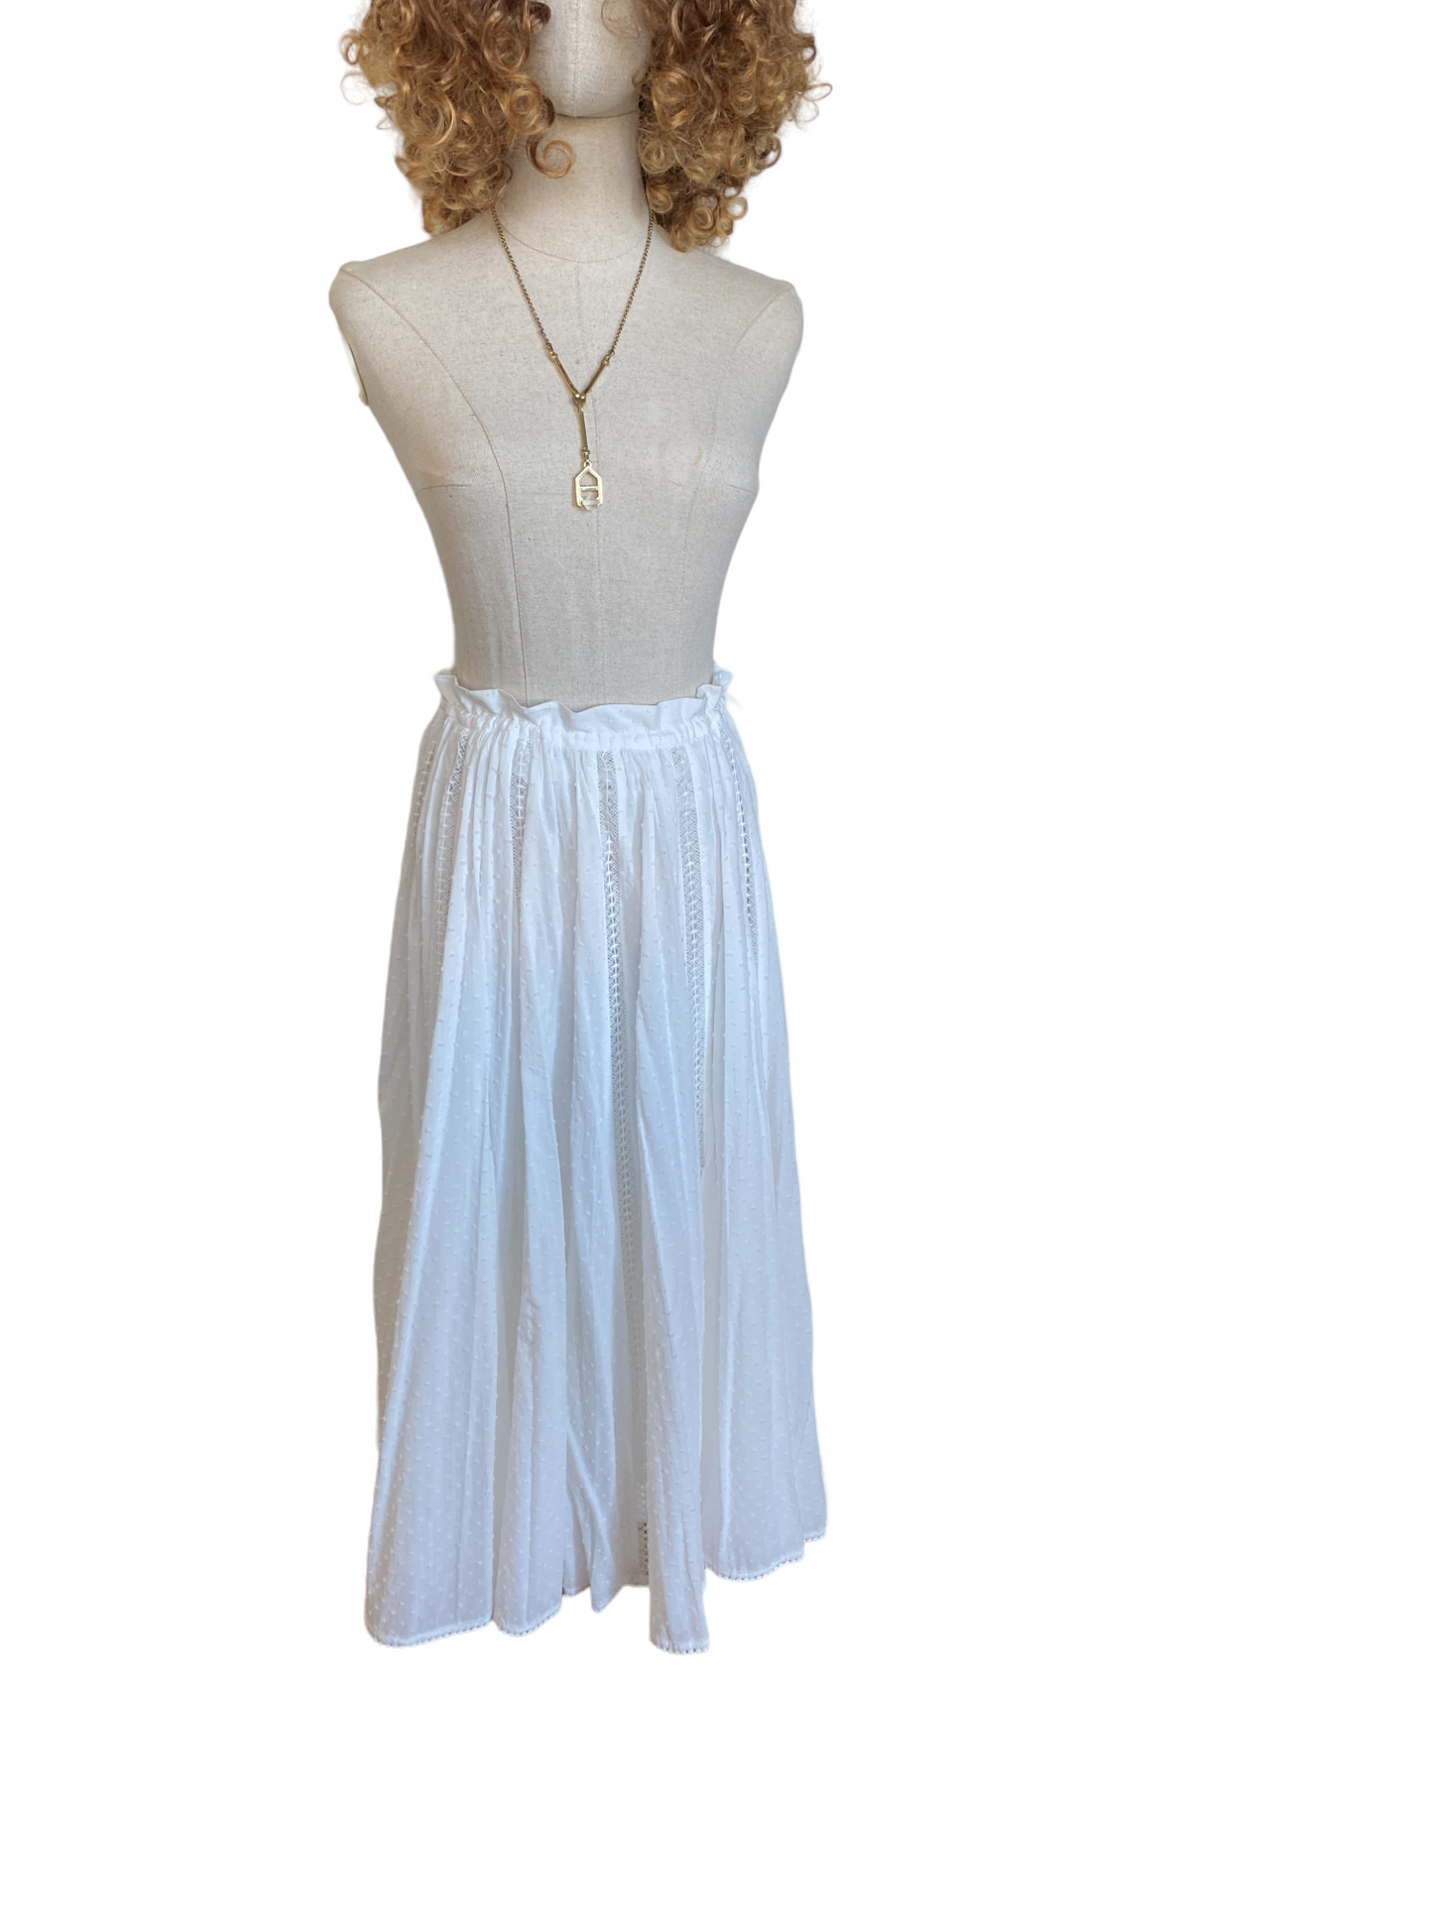 Zimmermann Suraya Lace Insert Skirt | Midi, Fringe, Cotton, White, Dots $600 RRP